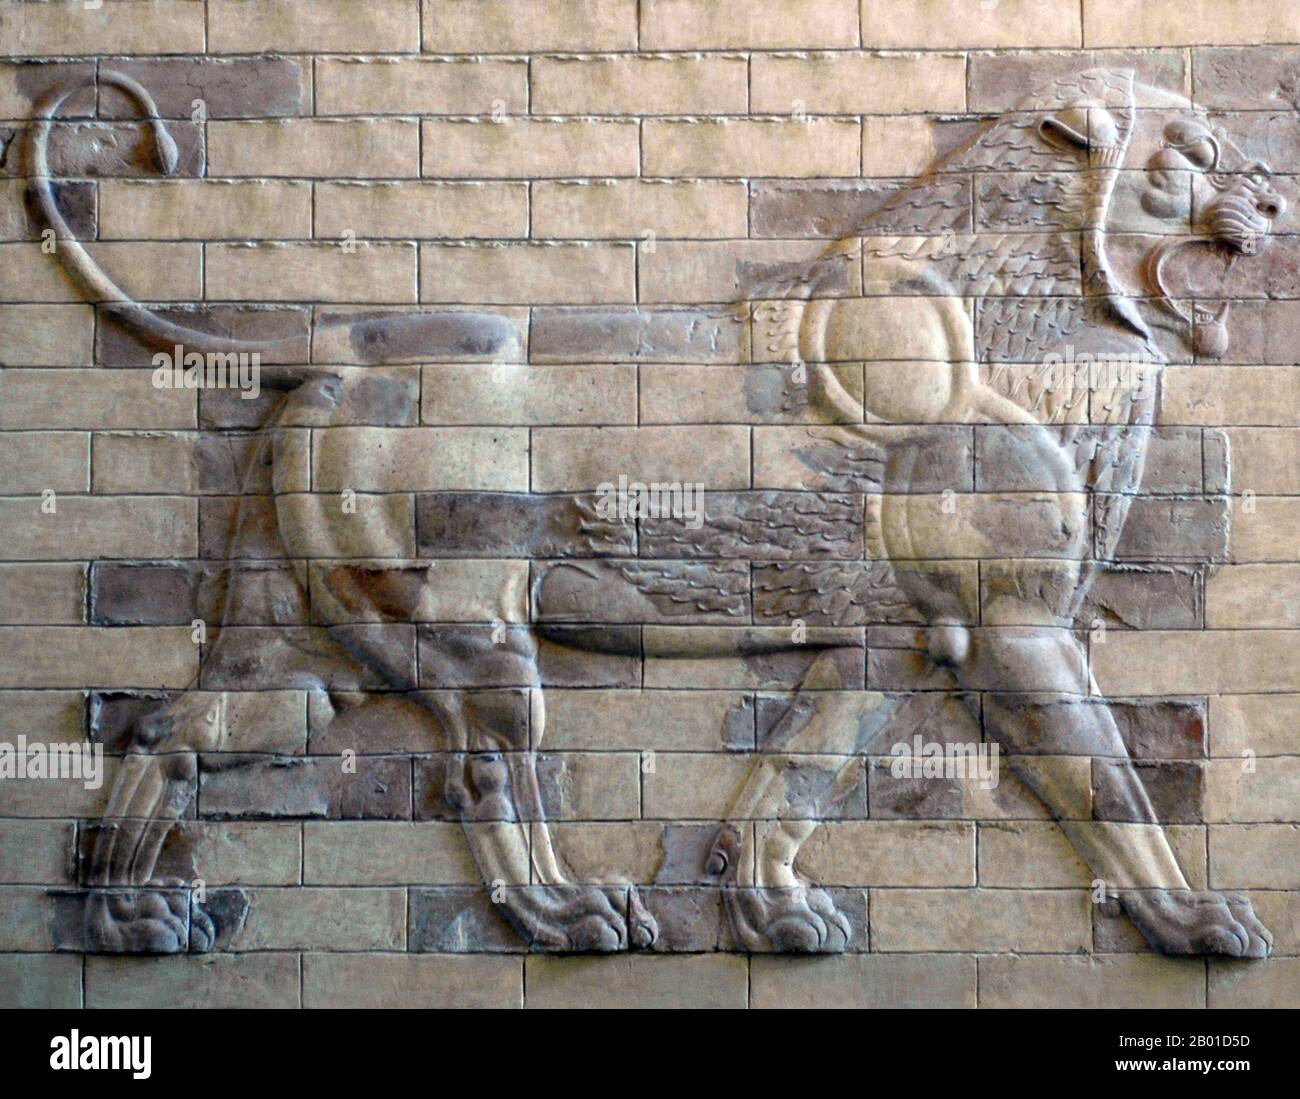 Iran/Perse: Relief en terre cuite d'un lion d'un mur dans le palais de Darius I (550-486 BCE), Susa, c. 510 BCE. Darius I (r. 522-486 BCE), aussi connu sous le nom de Darius le Grand, était le troisième roi des Rois de l'Empire achéménide. Darius a tenu l'empire à son apogée, puis y compris l'Égypte, le Baloutchistan, le Kurdistan et certaines parties de la Grèce. La désintégration et la chute de l'empire ont commencé avec sa mort et l'ascension de son fils, Xerxes I. Banque D'Images